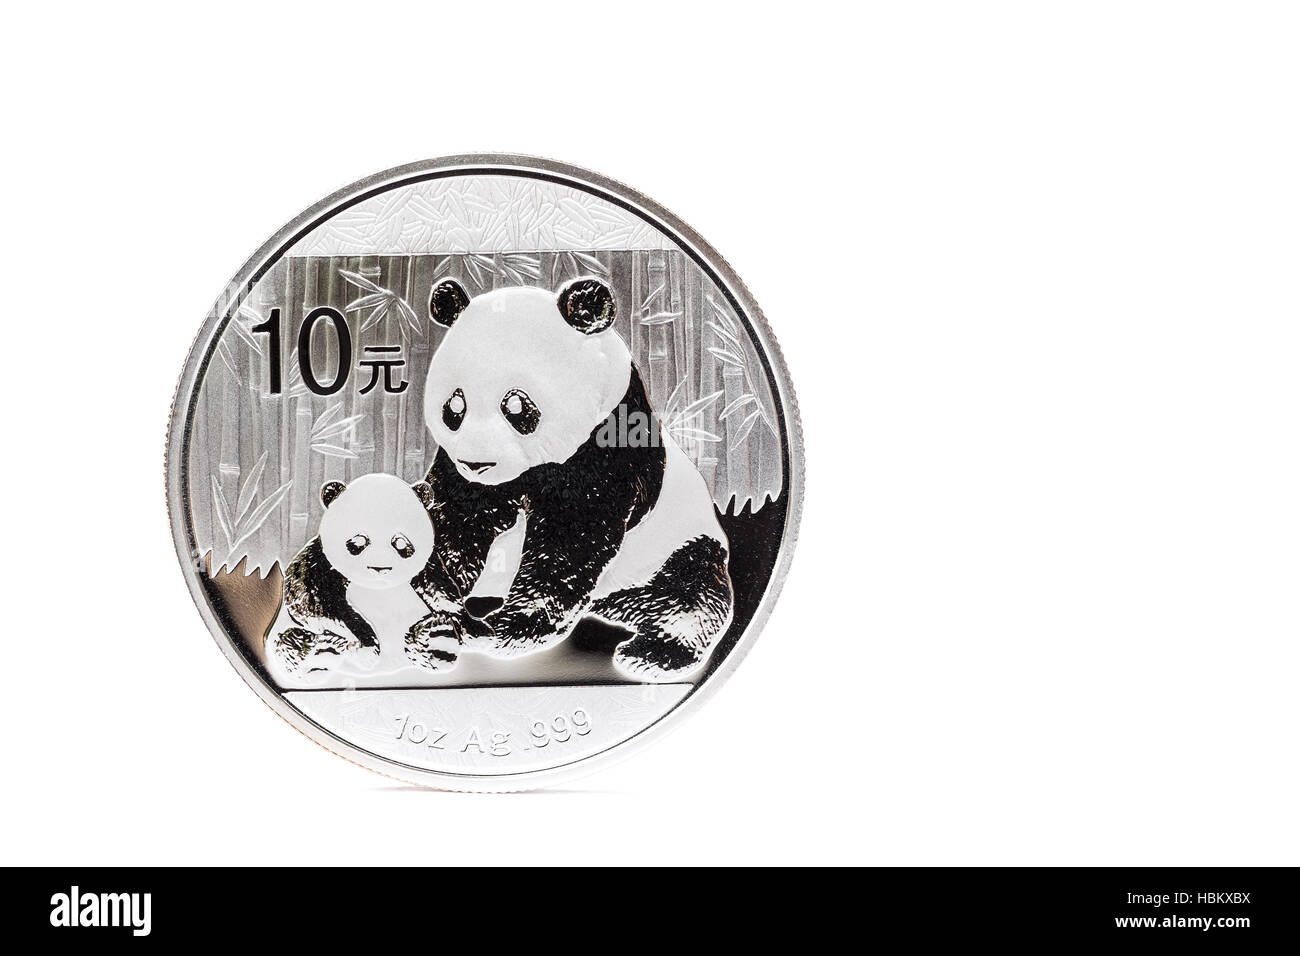 Pièce en argent avec la mère et l'enfant panda Banque D'Images